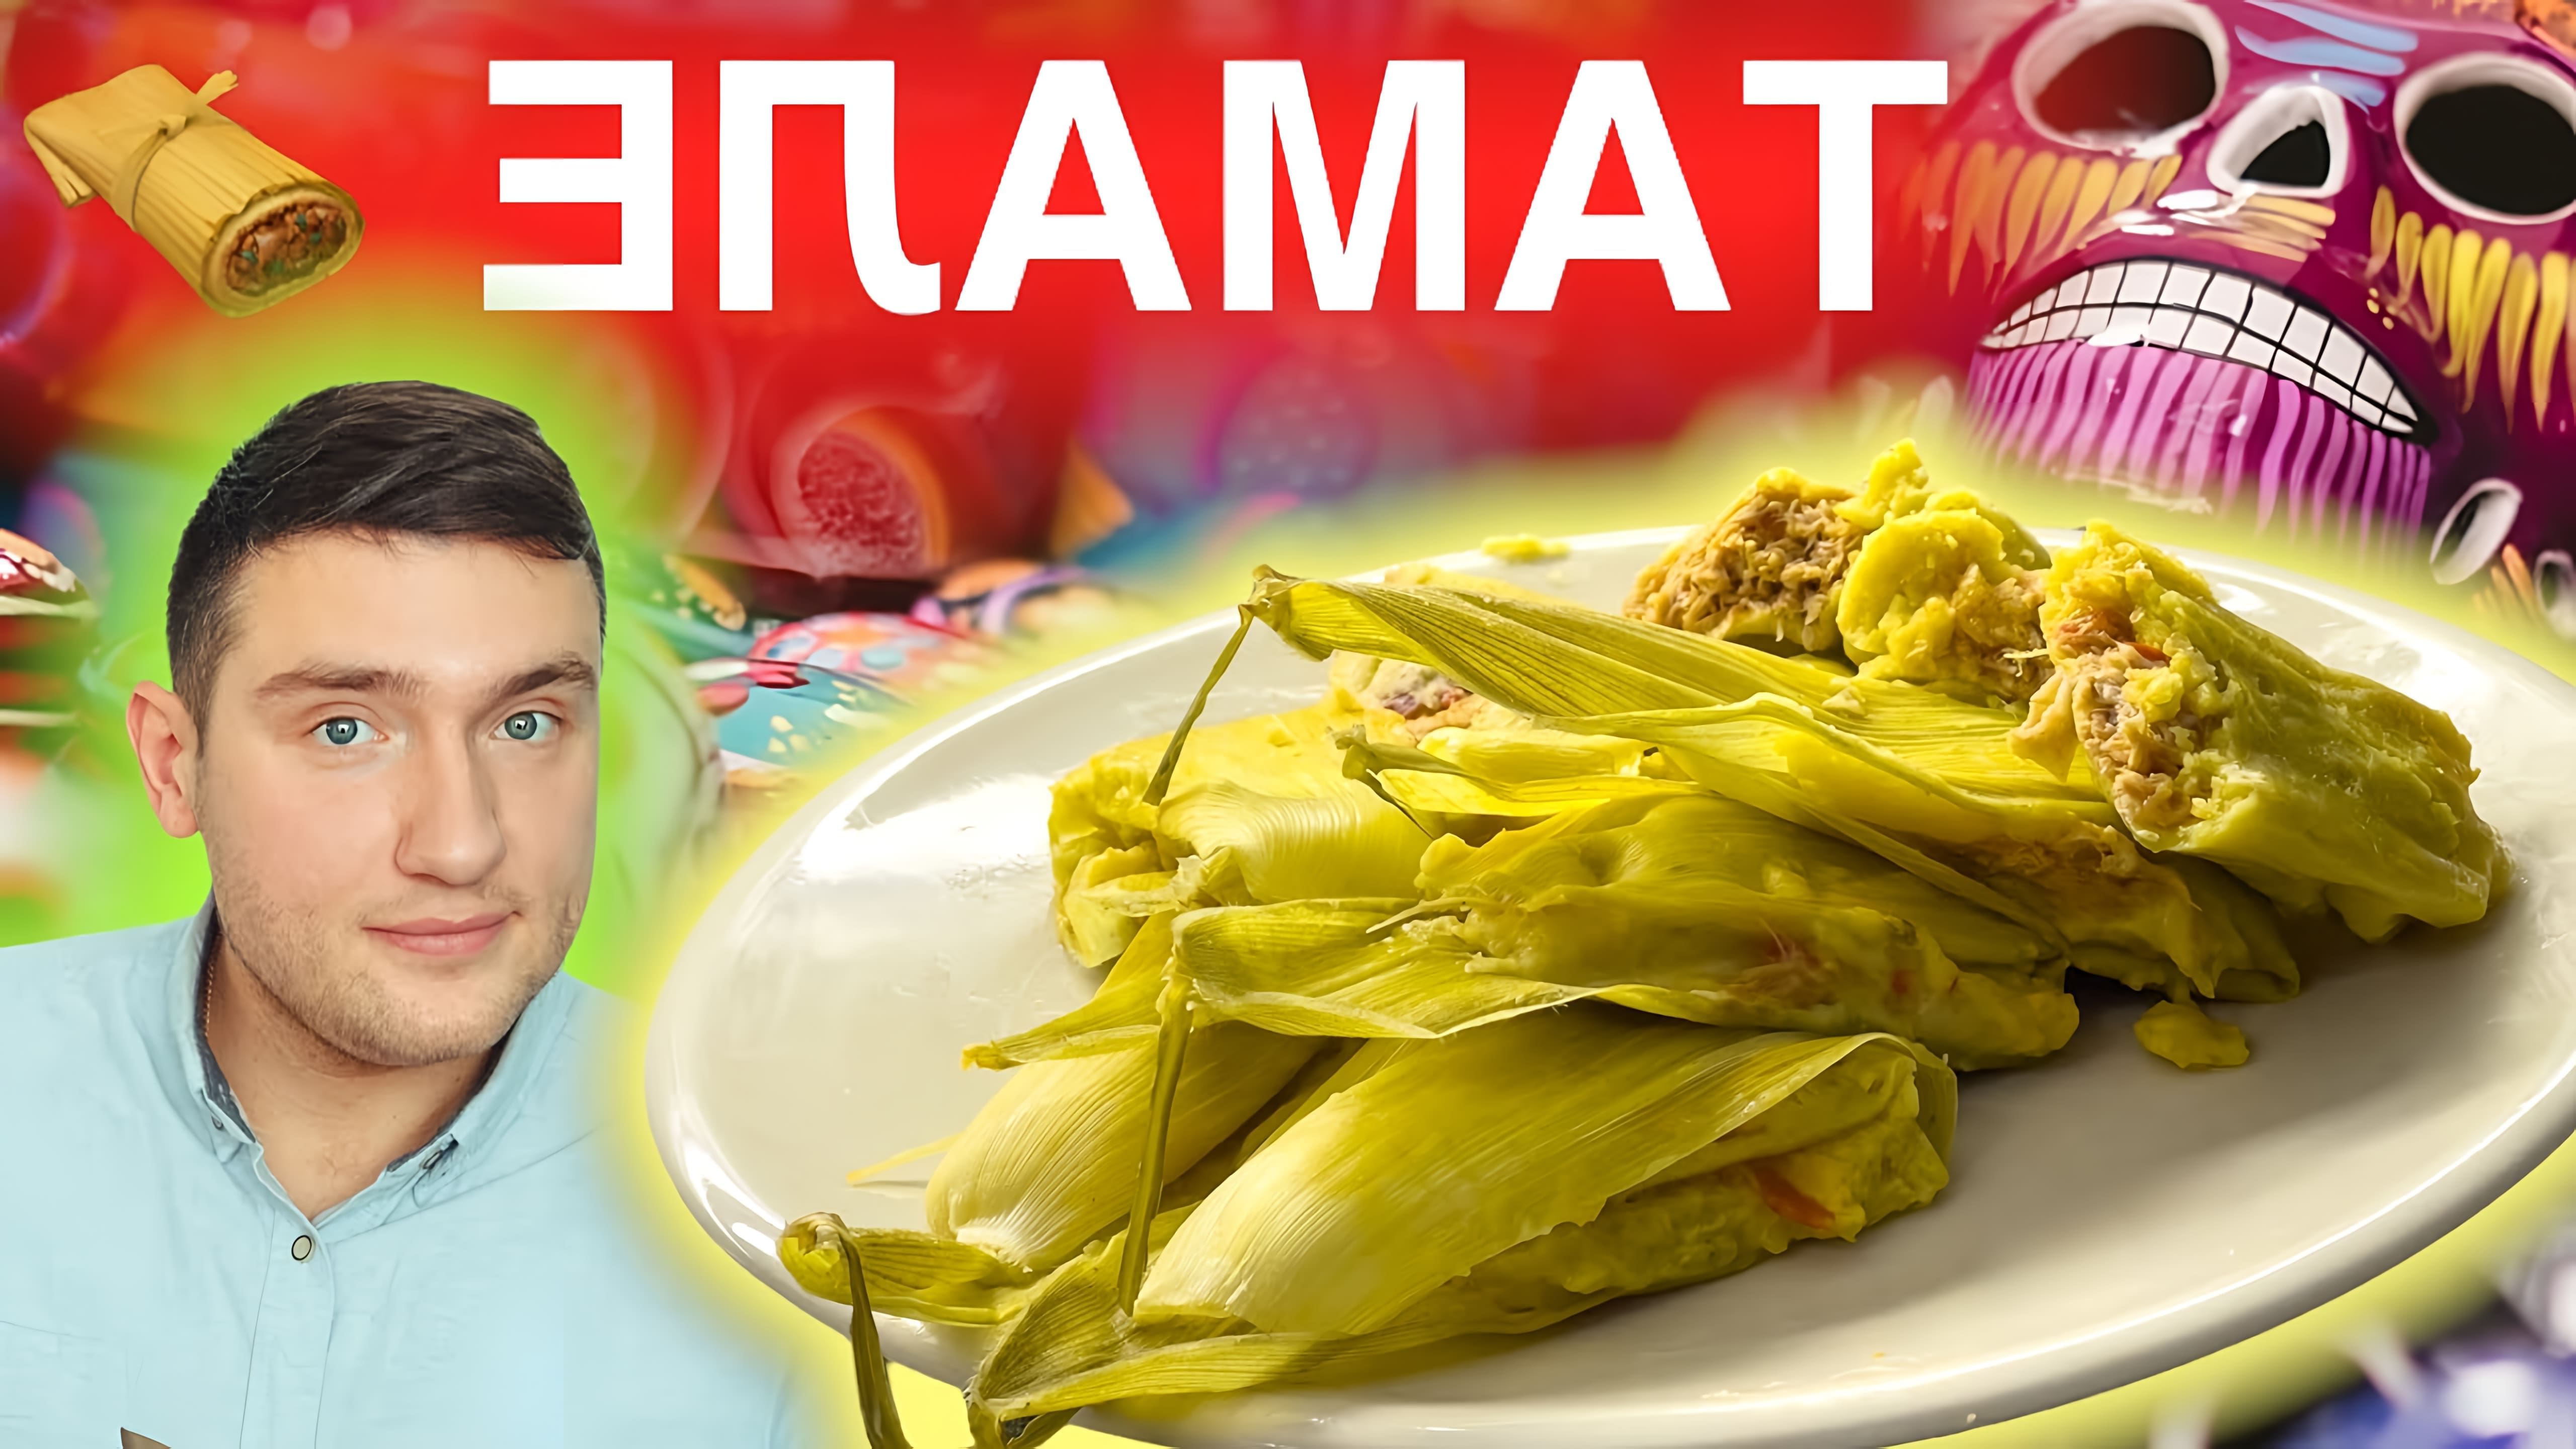 В этом видео демонстрируется рецепт приготовления мексиканского блюда - тамале